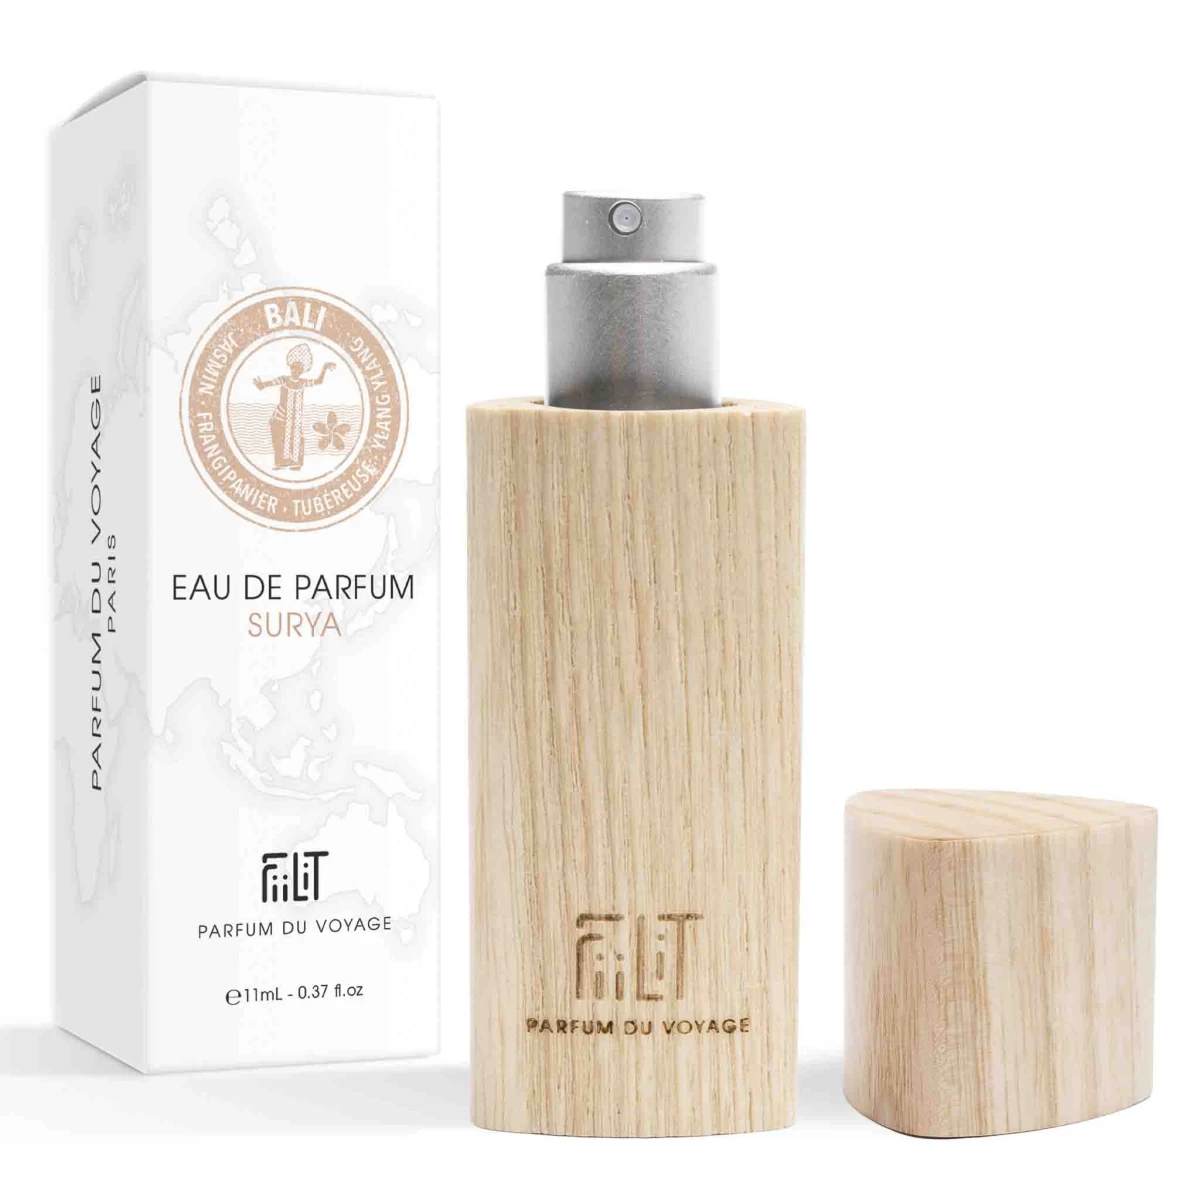 detailed_9_eau-de-parfum-11ml-bois-surya-bali-fiilit-parfum-du-voyage-naturel.webp